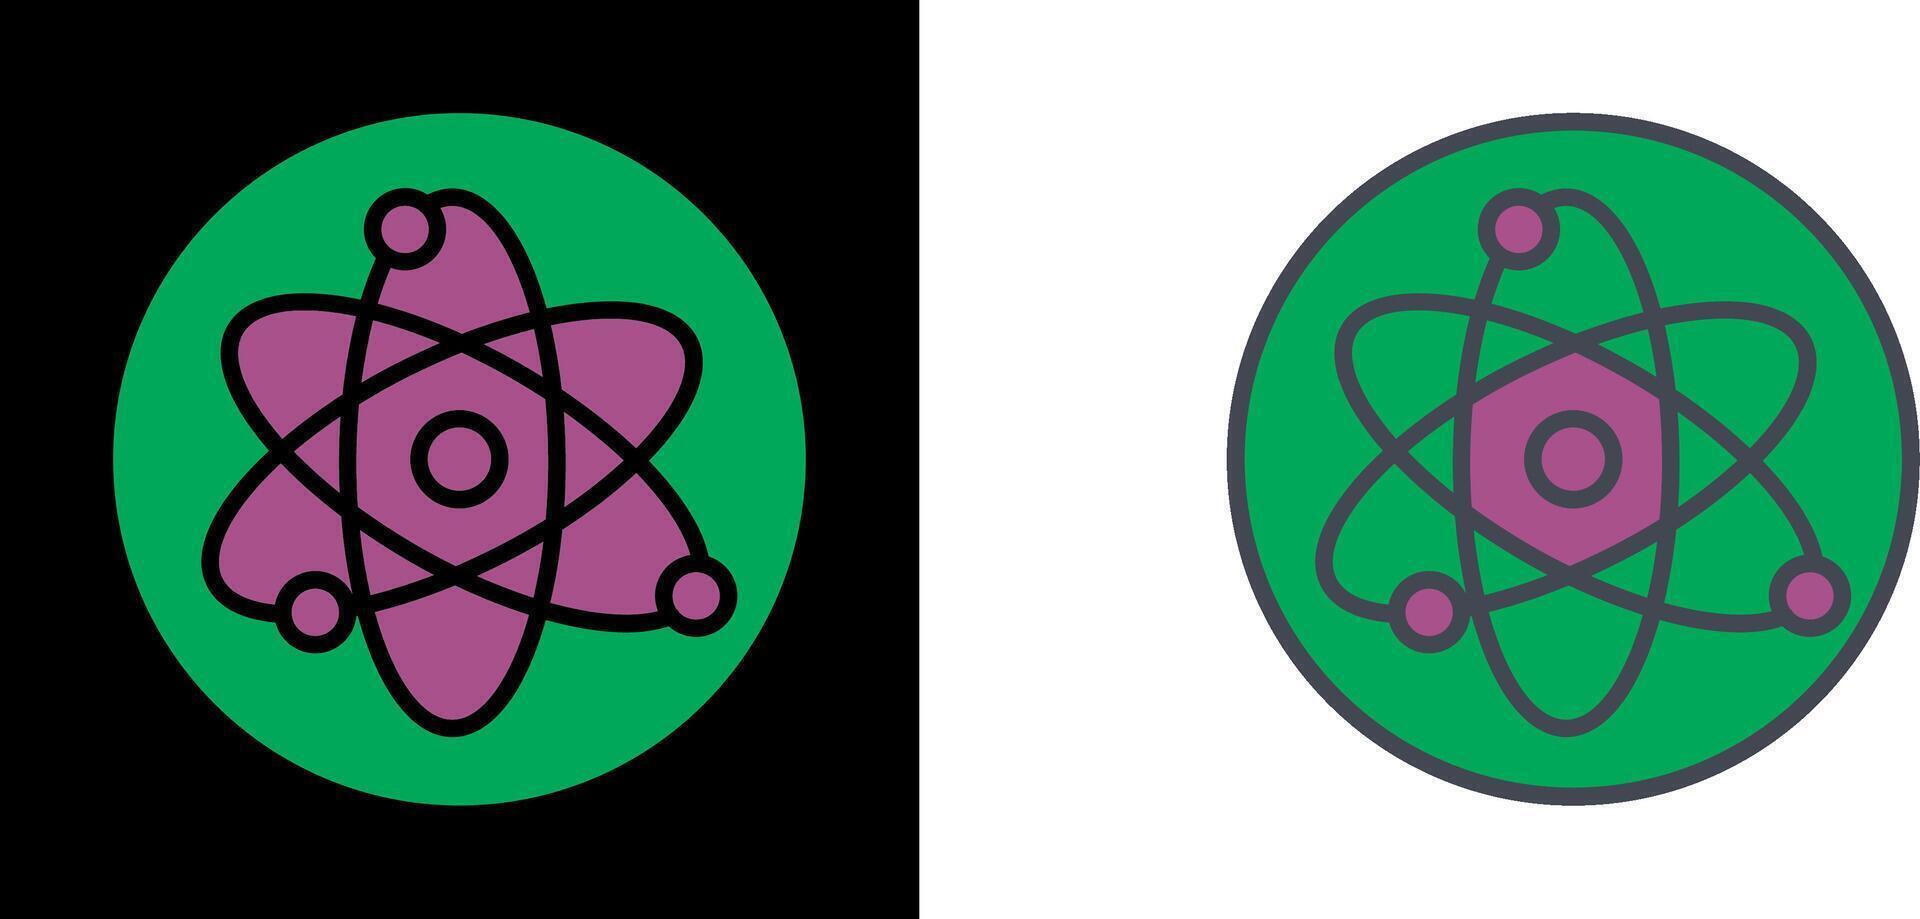 conception d'icône d'atome vecteur